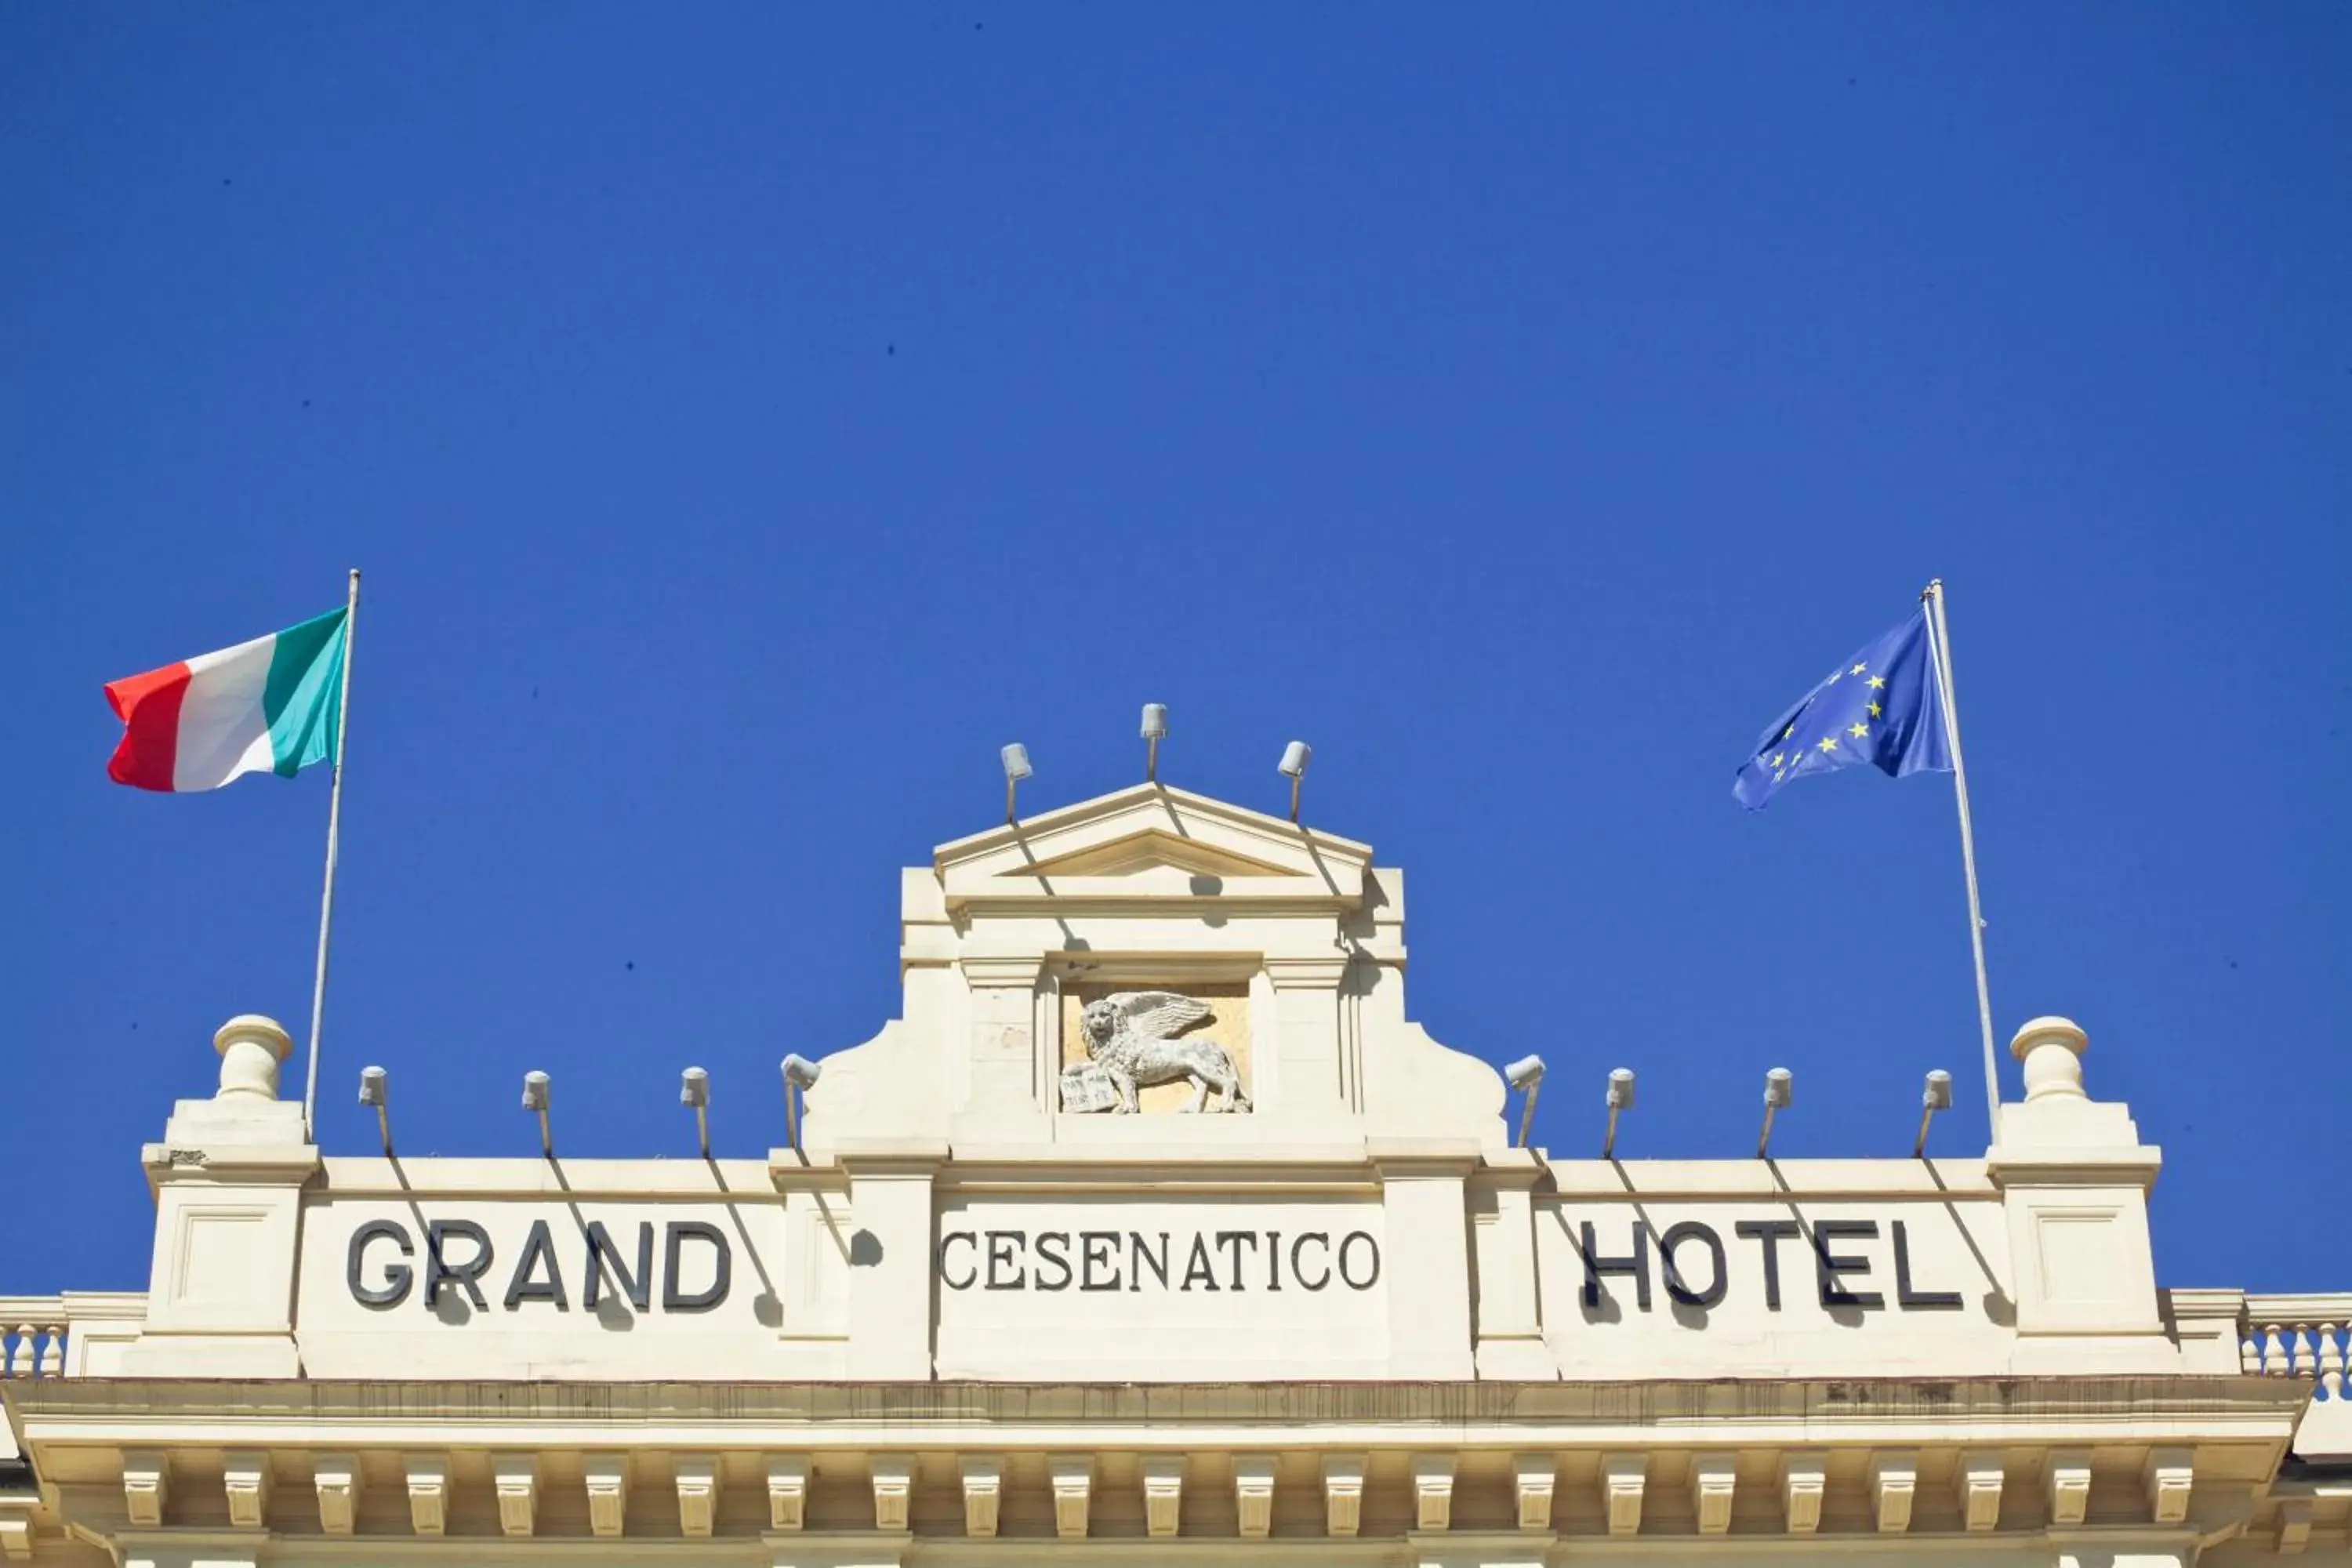 Decorative detail in Grand Hotel Cesenatico